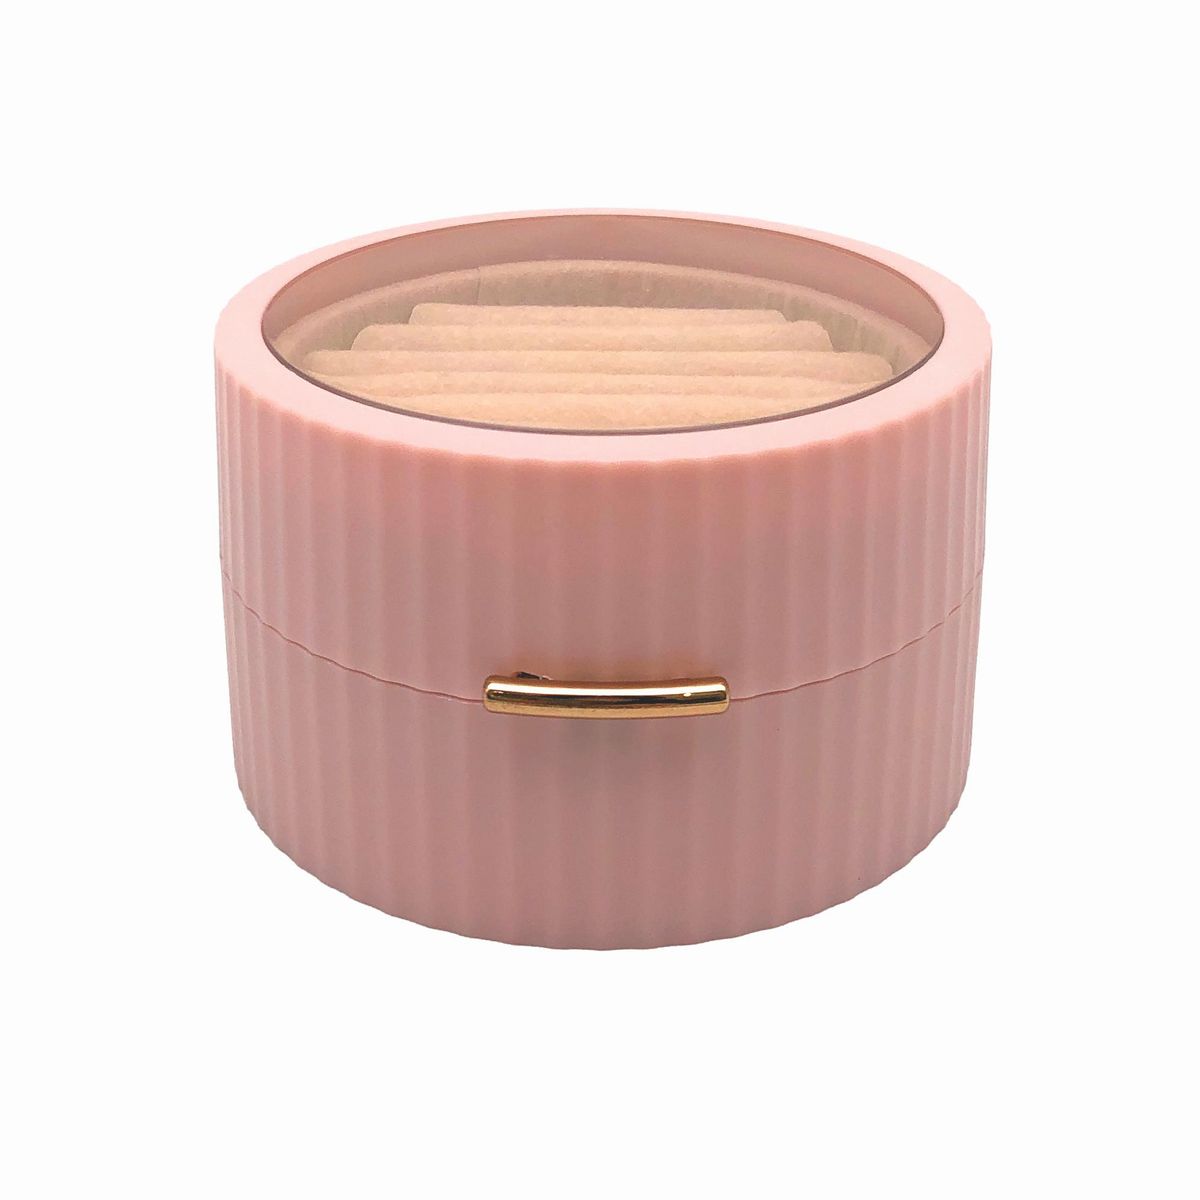 アクセサリーケース 円柱形 透明の蓋 マグネット開閉式 シンプル (ピンク)